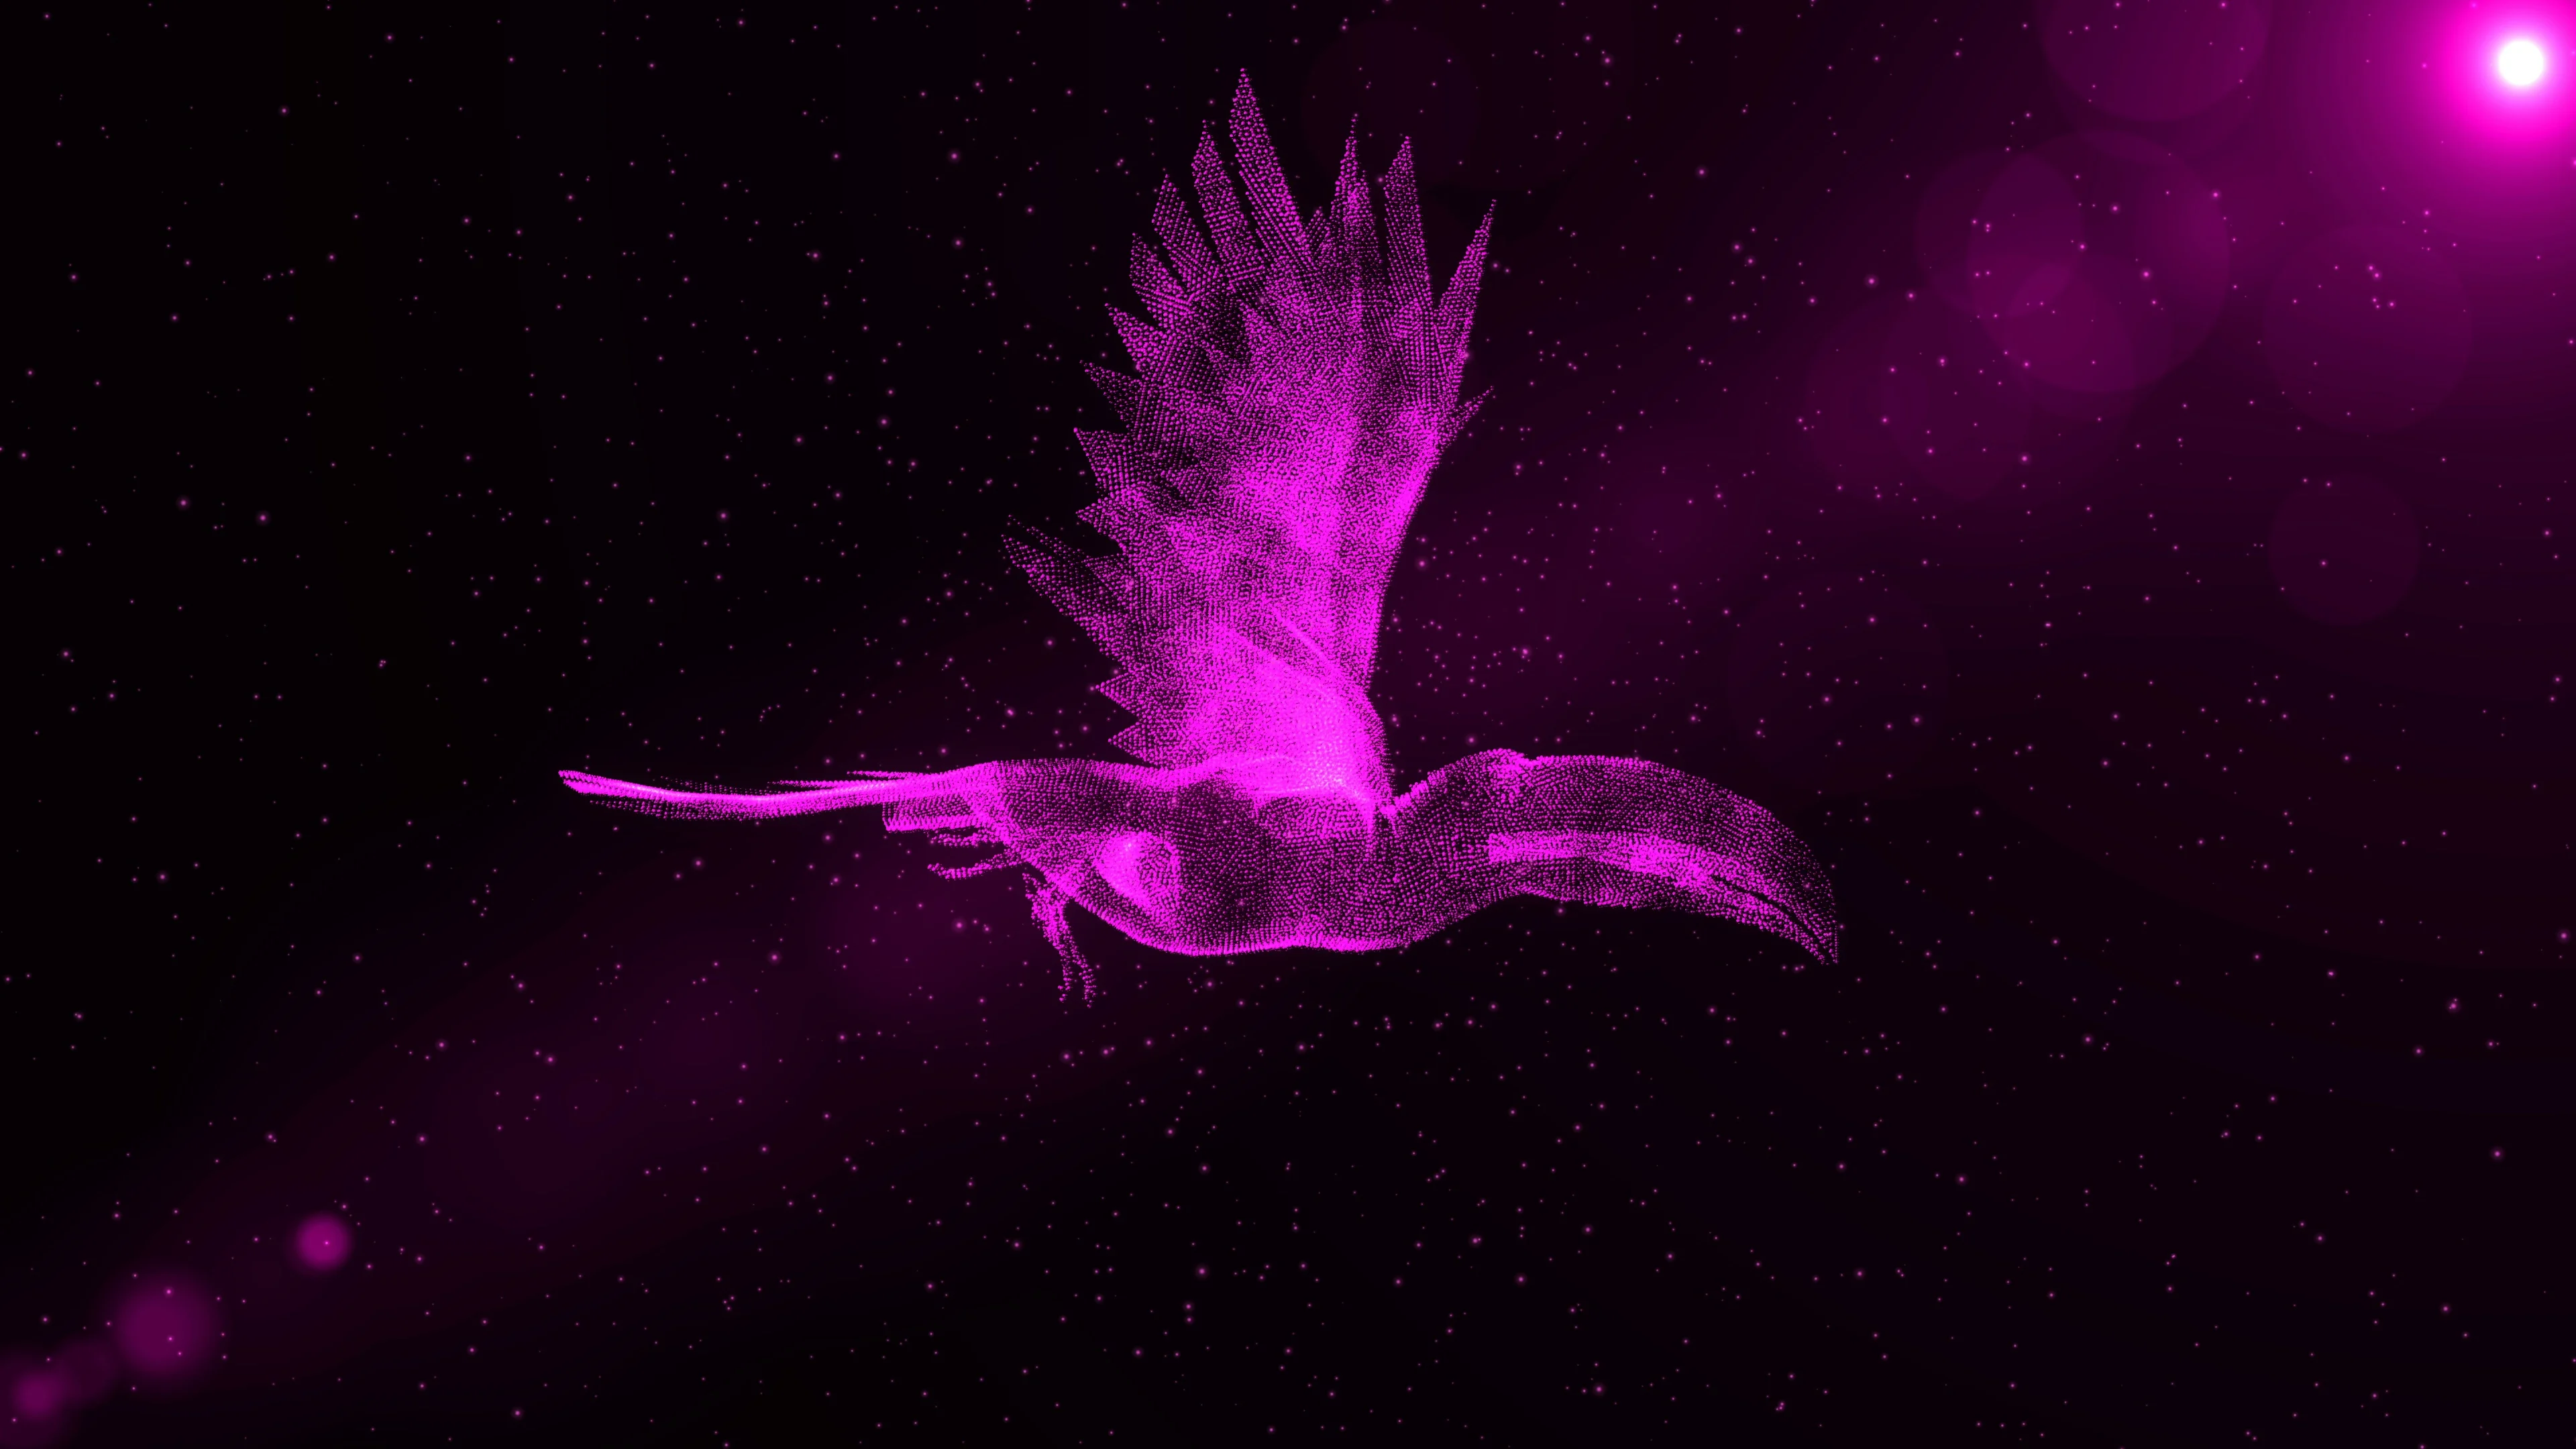 purple flying birds